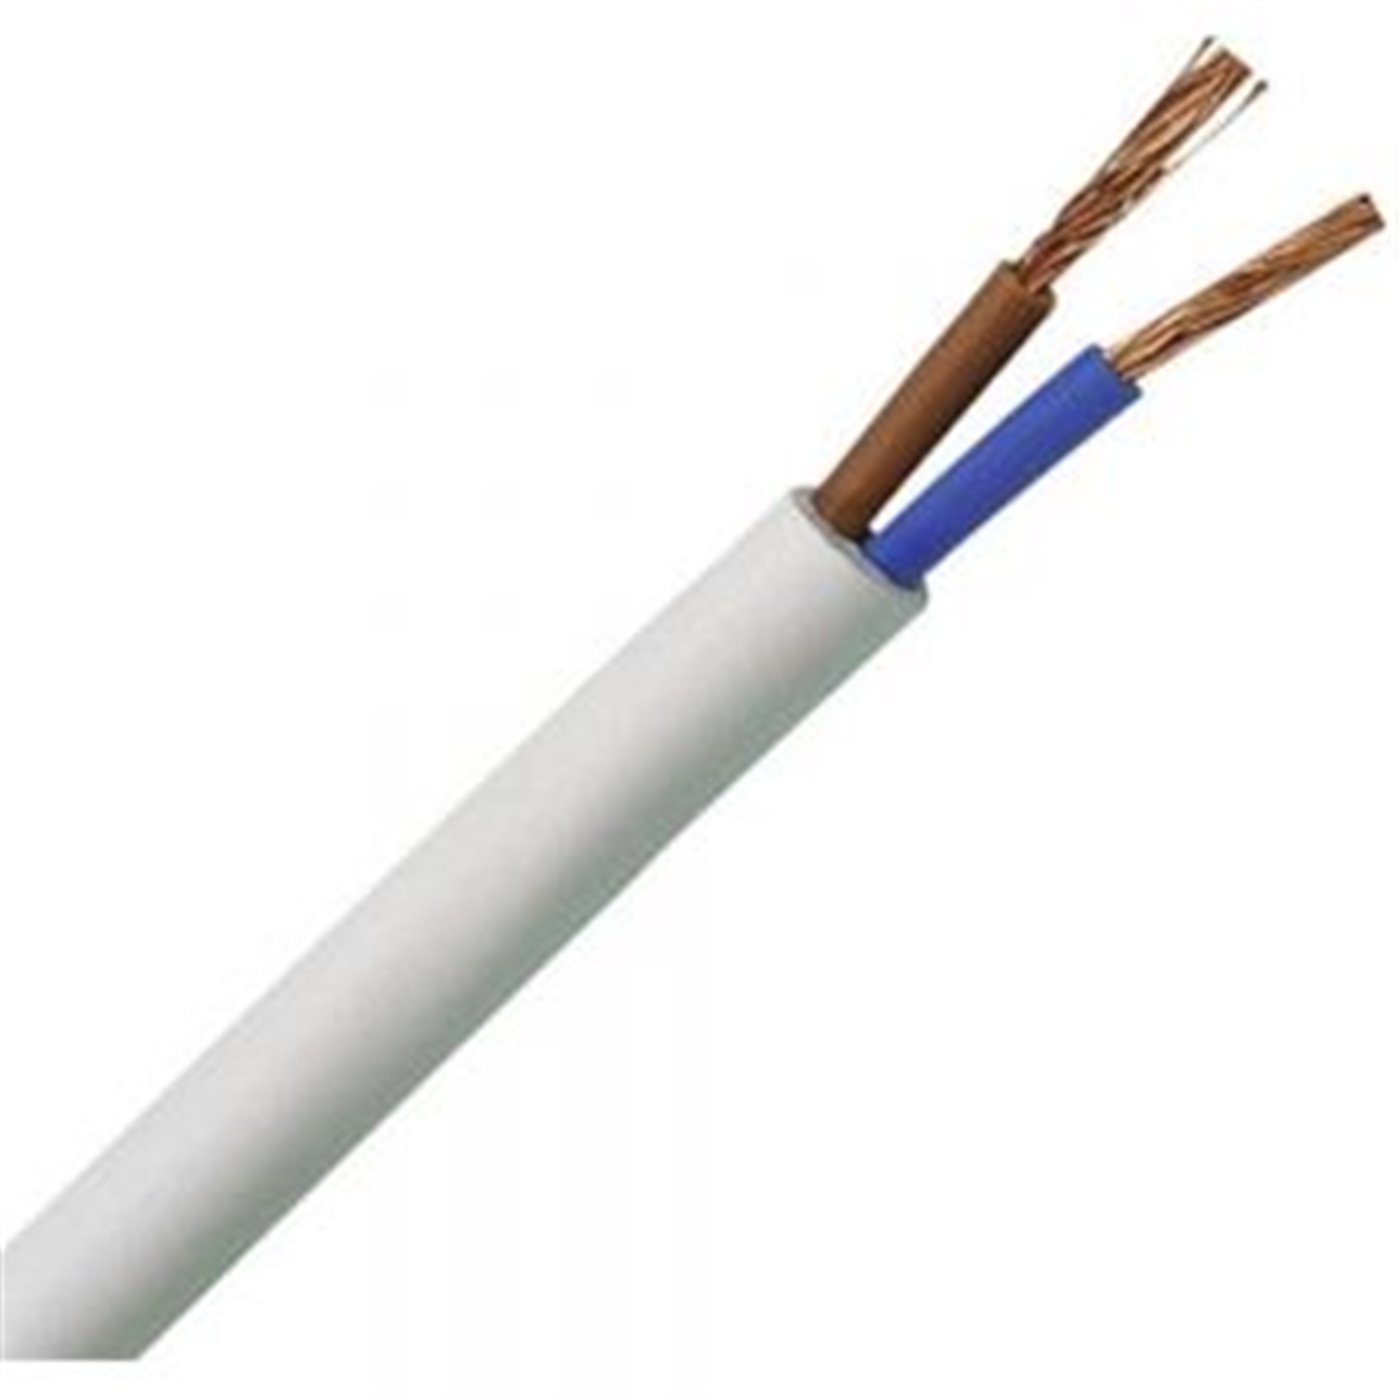 Kábel elek.H03VV-F 2x0,75 biely-100m(okrúhly)